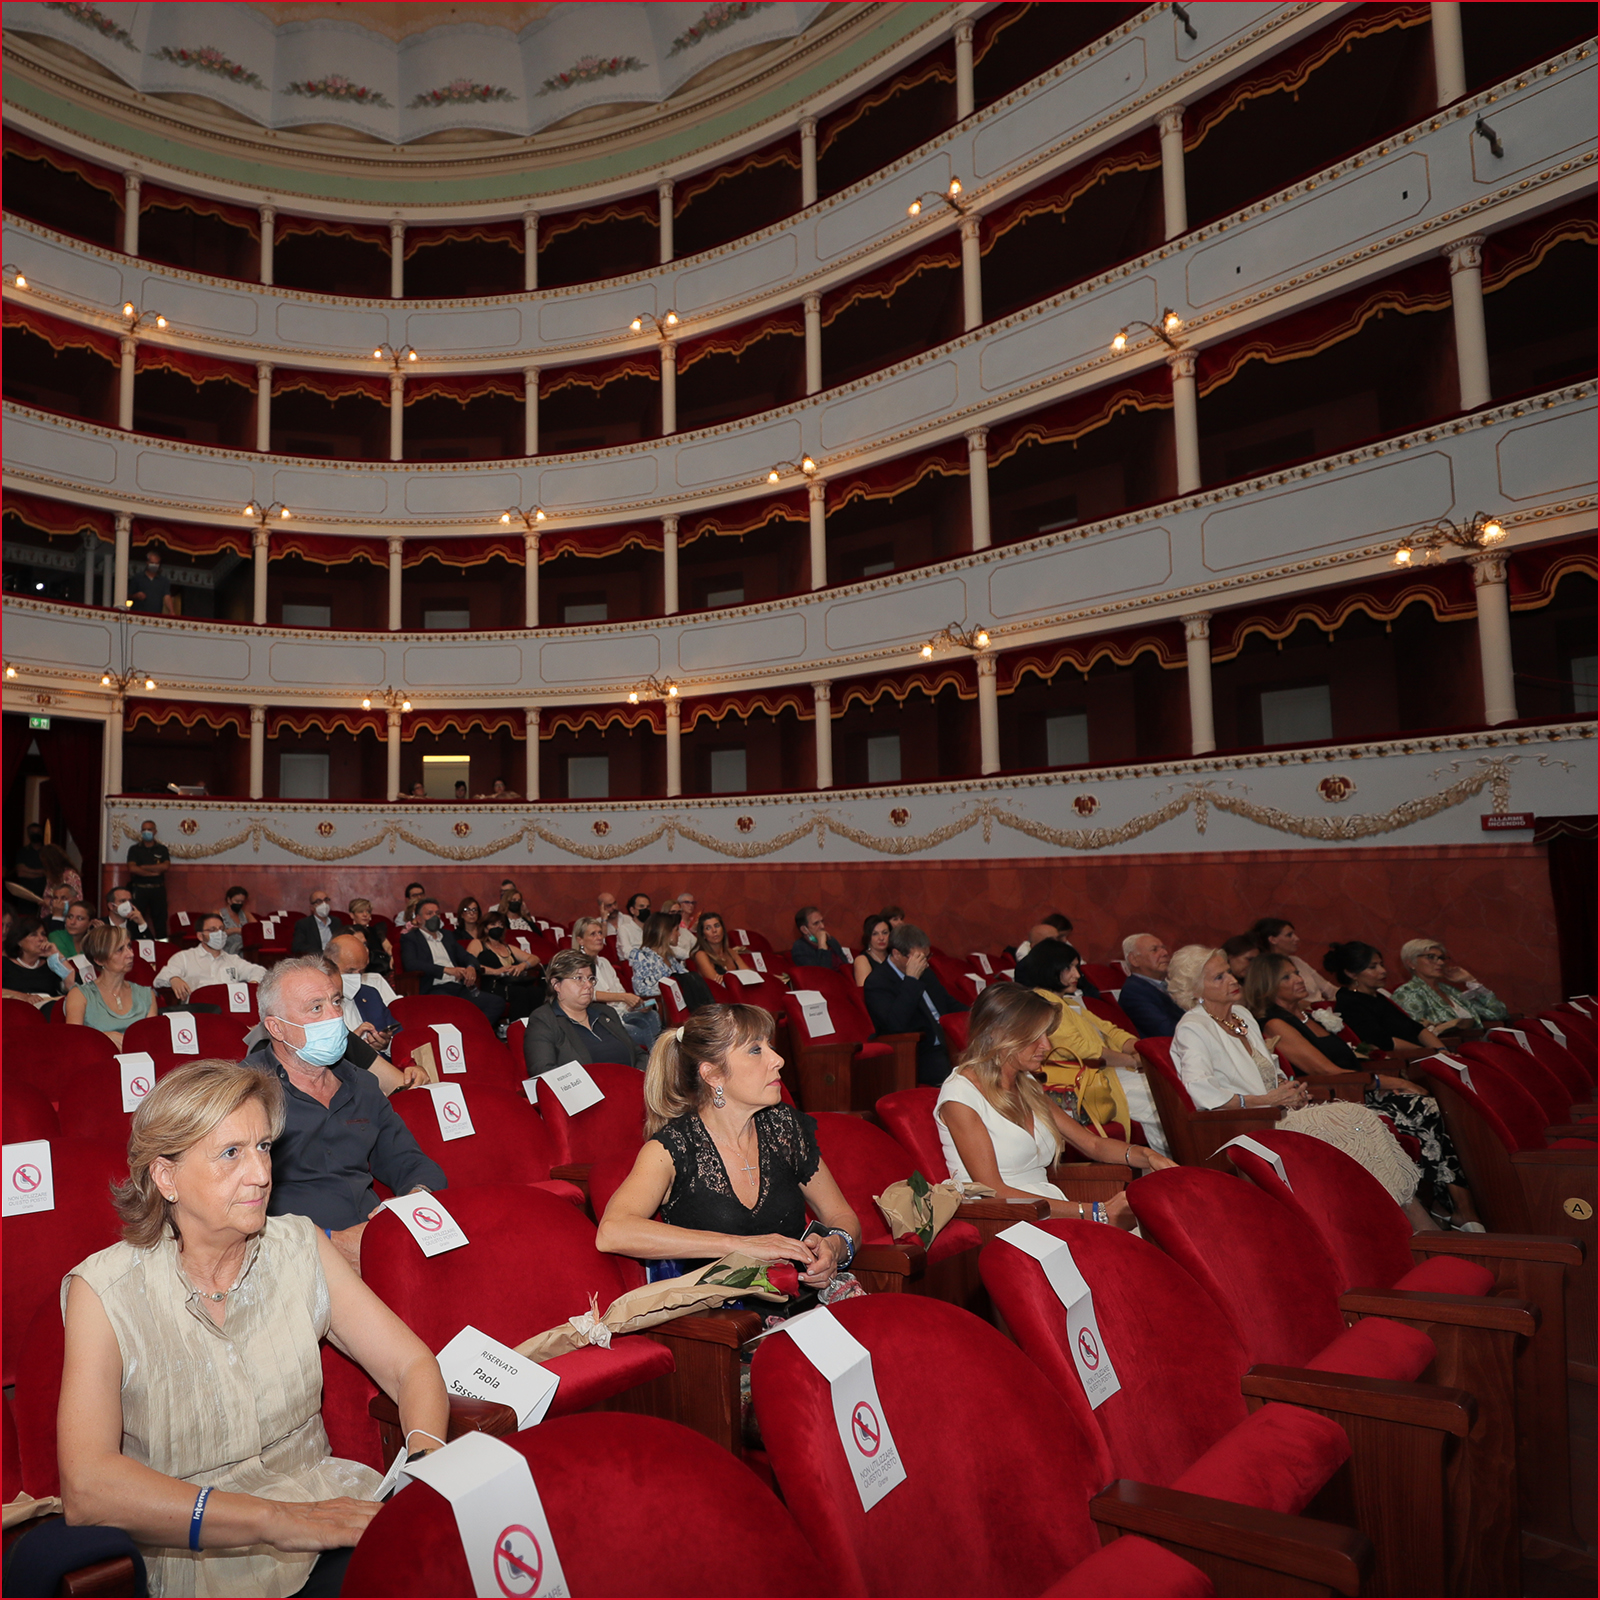 L'anterpima swl Docufilm al Teatro Petrarca di Arezzo con le Imprenditrici Aretine in prima fila.